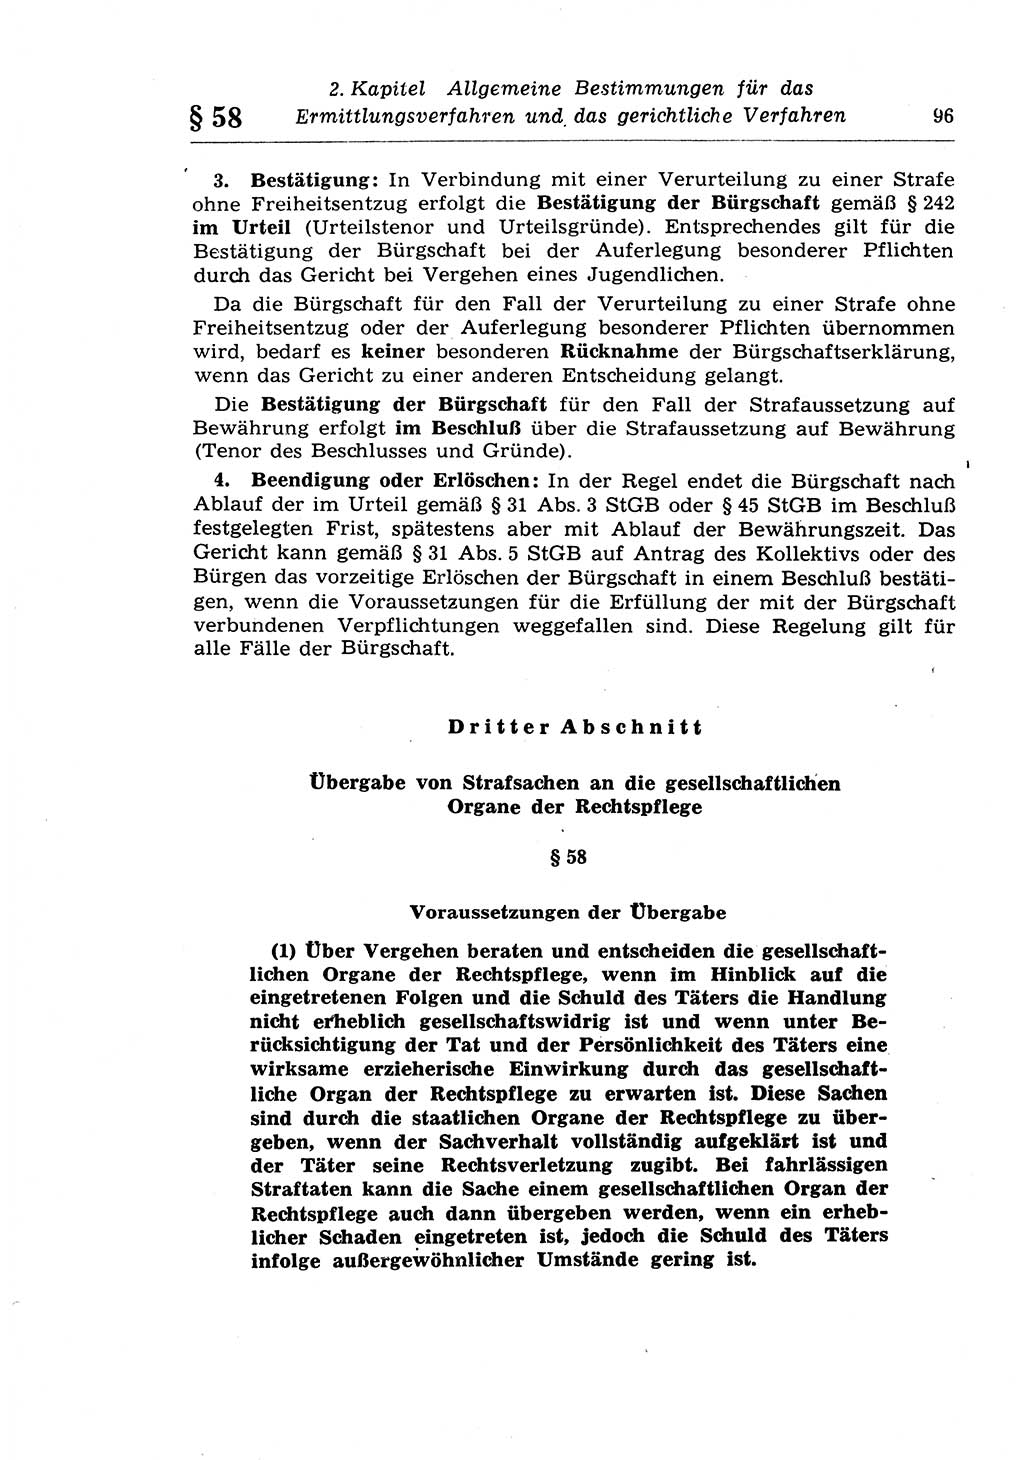 Strafprozeßrecht der DDR (Deutsche Demokratische Republik), Lehrkommentar zur Strafprozeßordnung (StPO) 1968, Seite 96 (Strafprozeßr. DDR Lehrkomm. StPO 19688, S. 96)